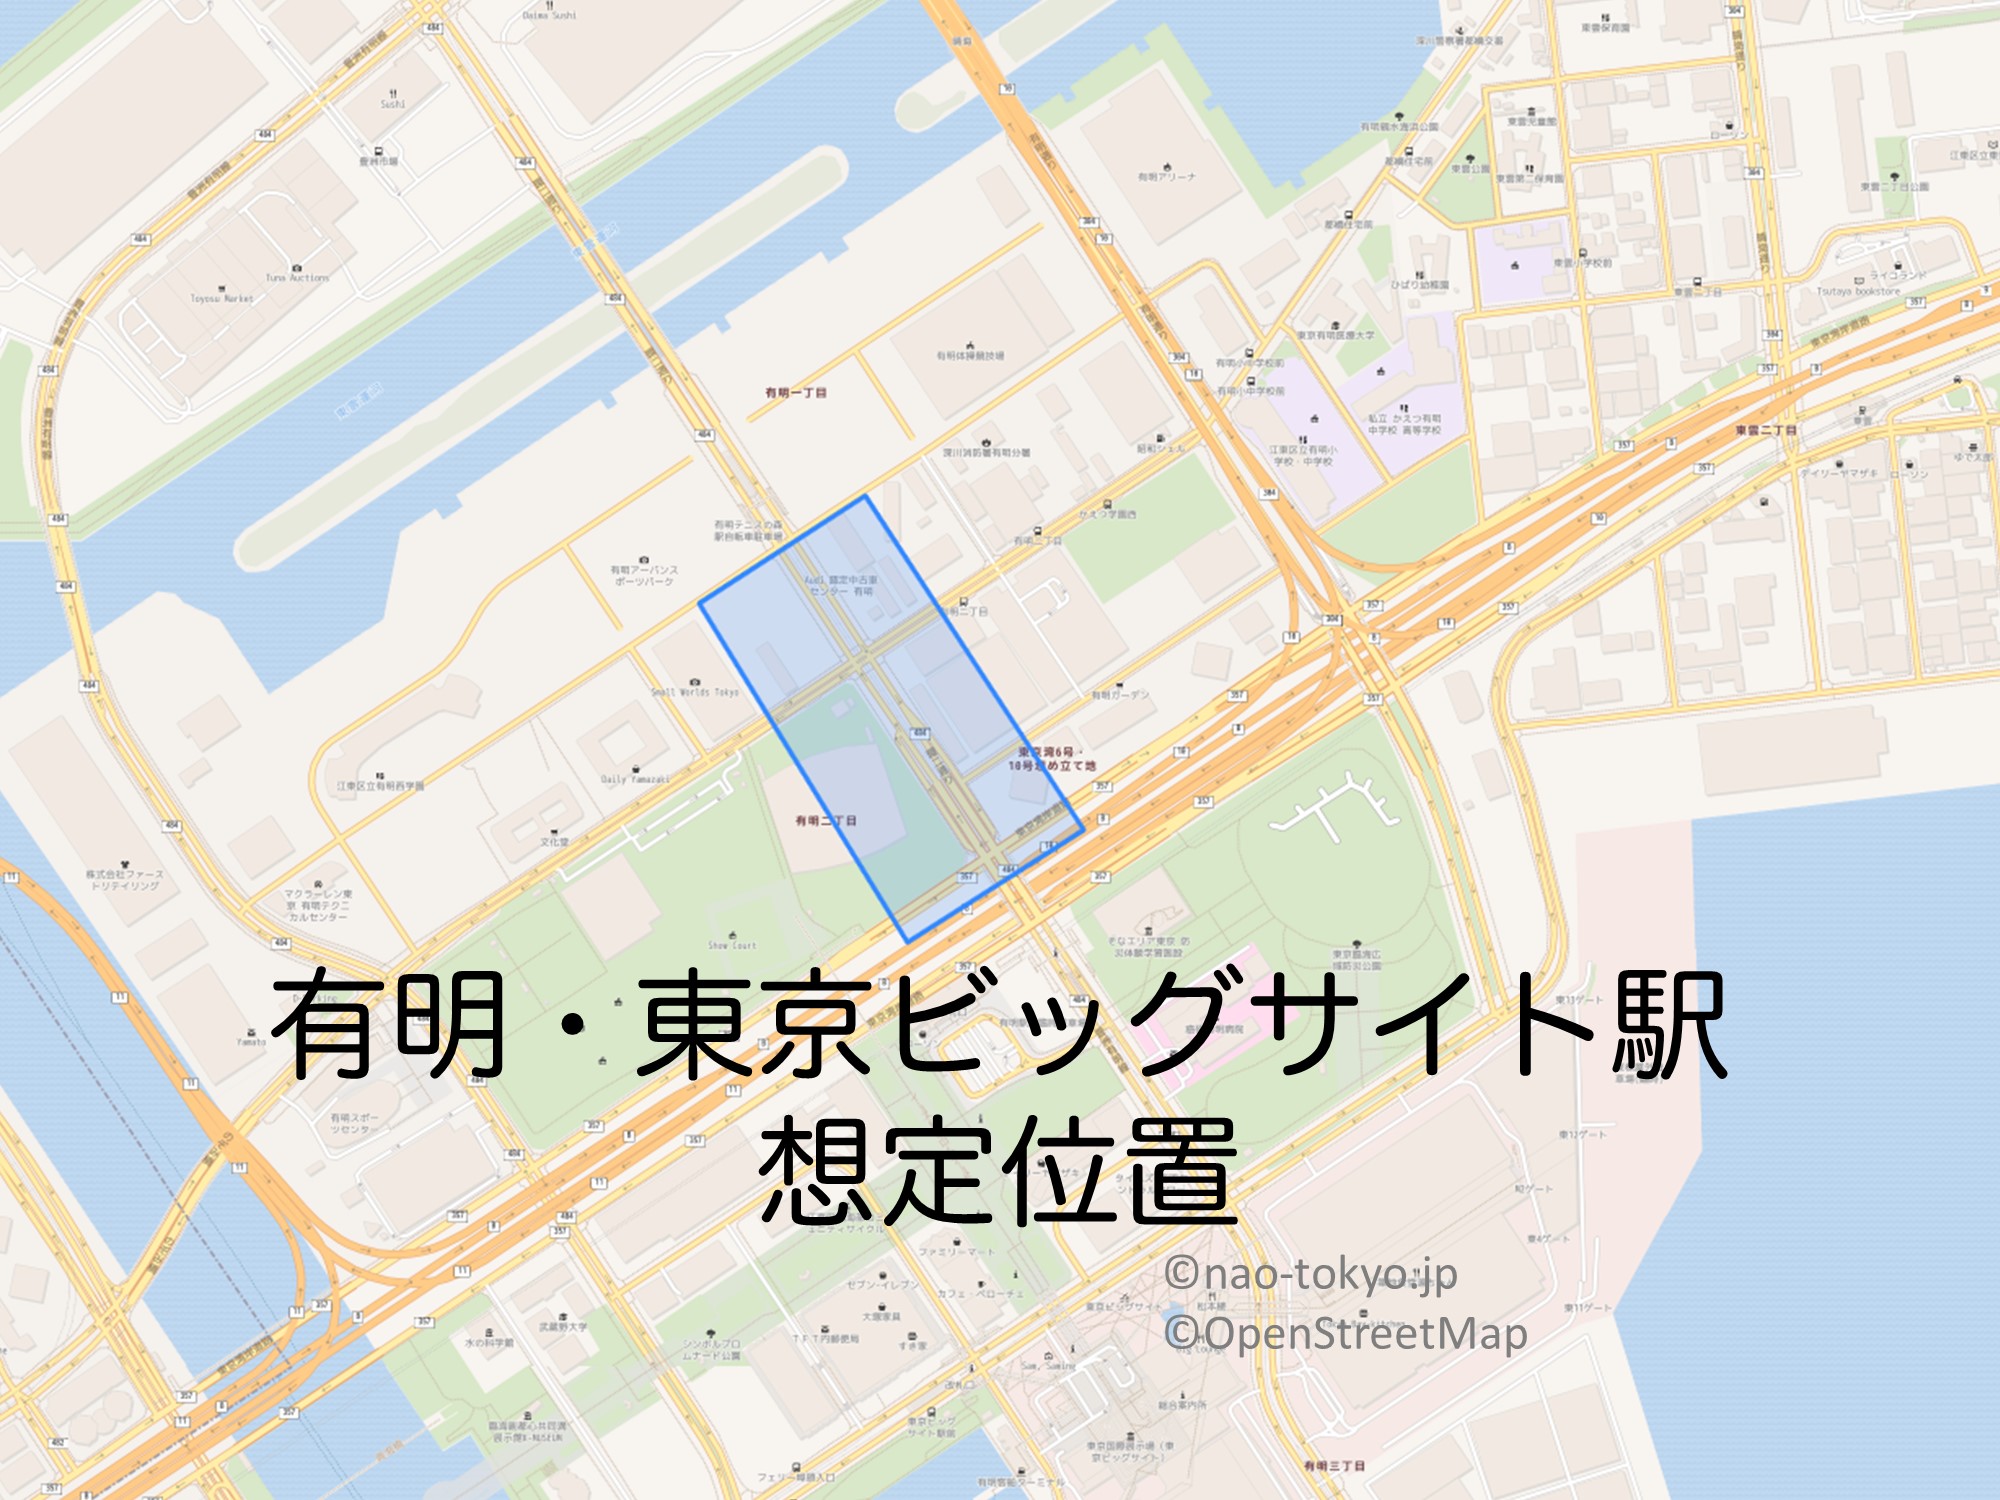 有明・東京ビッグサイト駅の想定位置